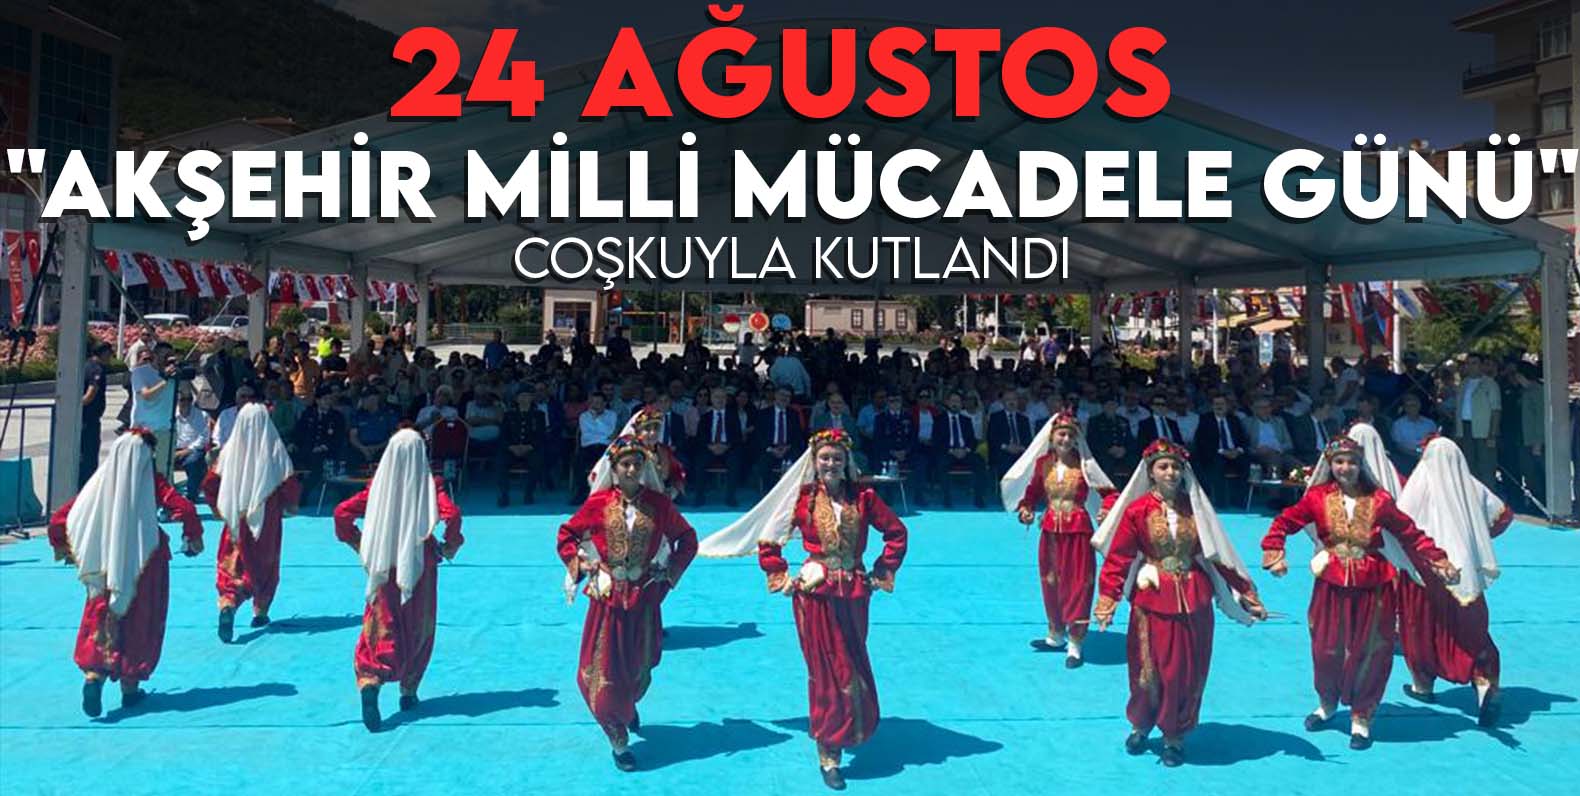 24 Ağustos "Akşehir Milli Mücadele Günü" coşkuyla kutlandı